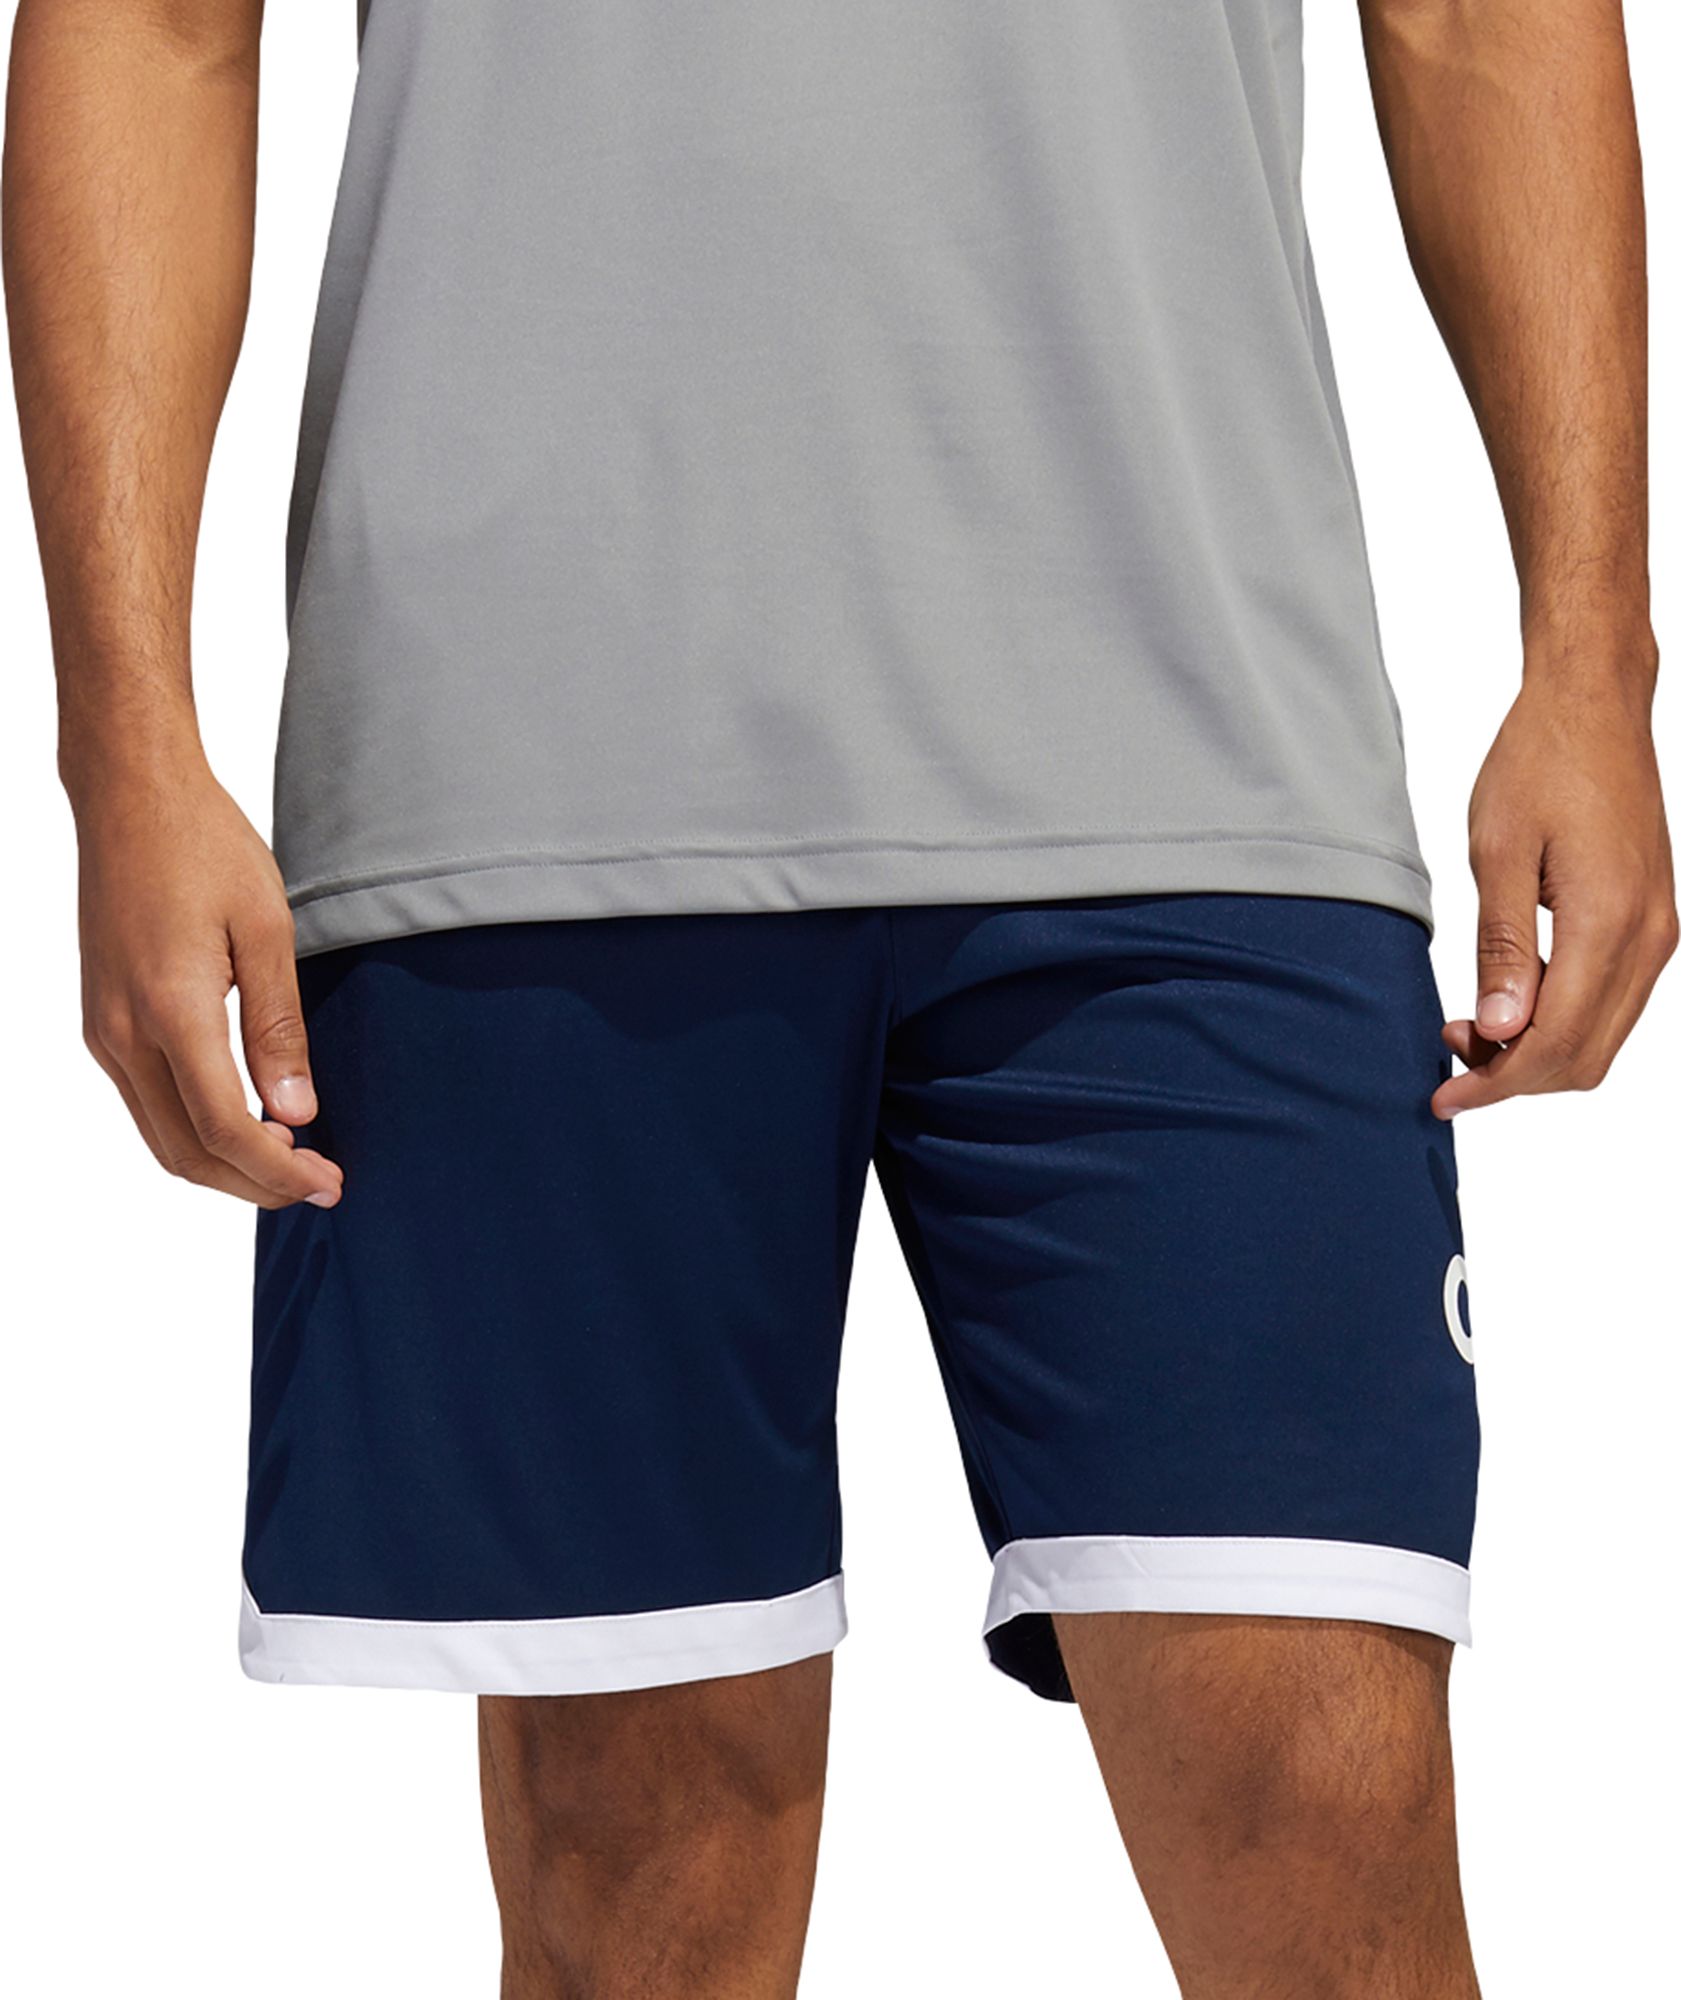 mens basketball shorts adidas